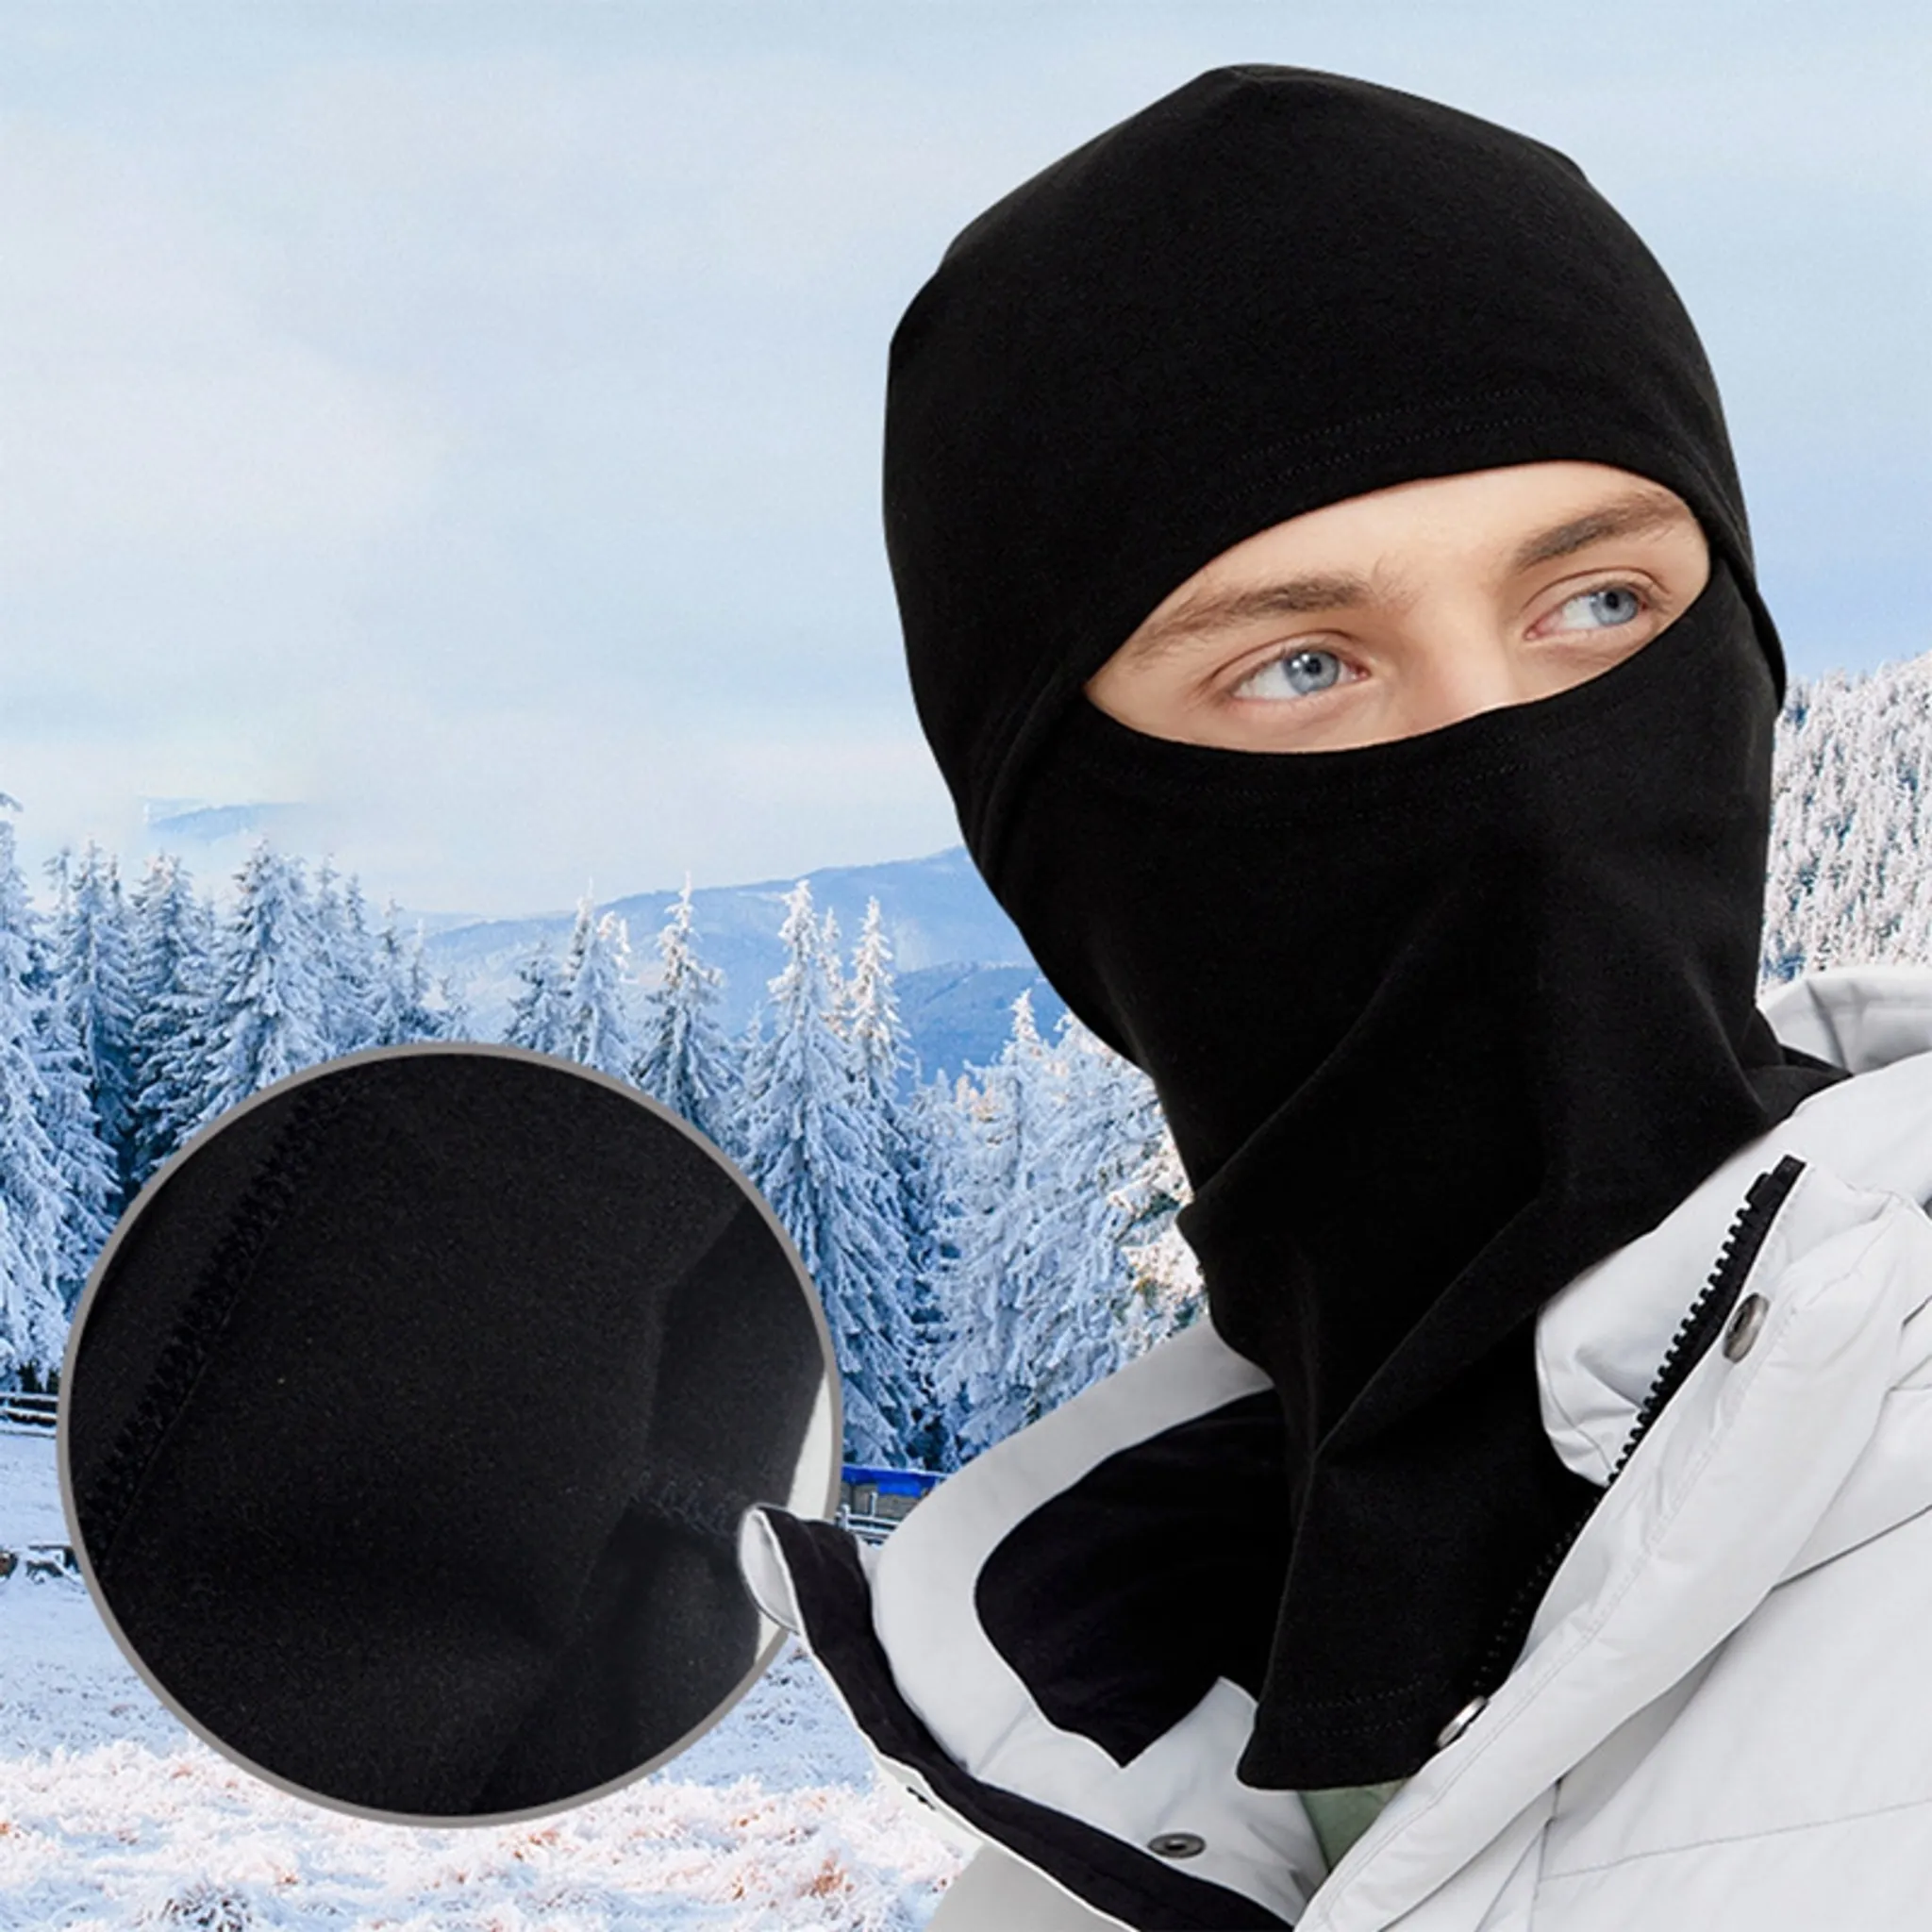 Balaclava Gesichtsmaske Winddicht Warm Sturmhaube für Radfahren,Skifahren, Motorrad Fahren Ski Maske Gesichtshaube